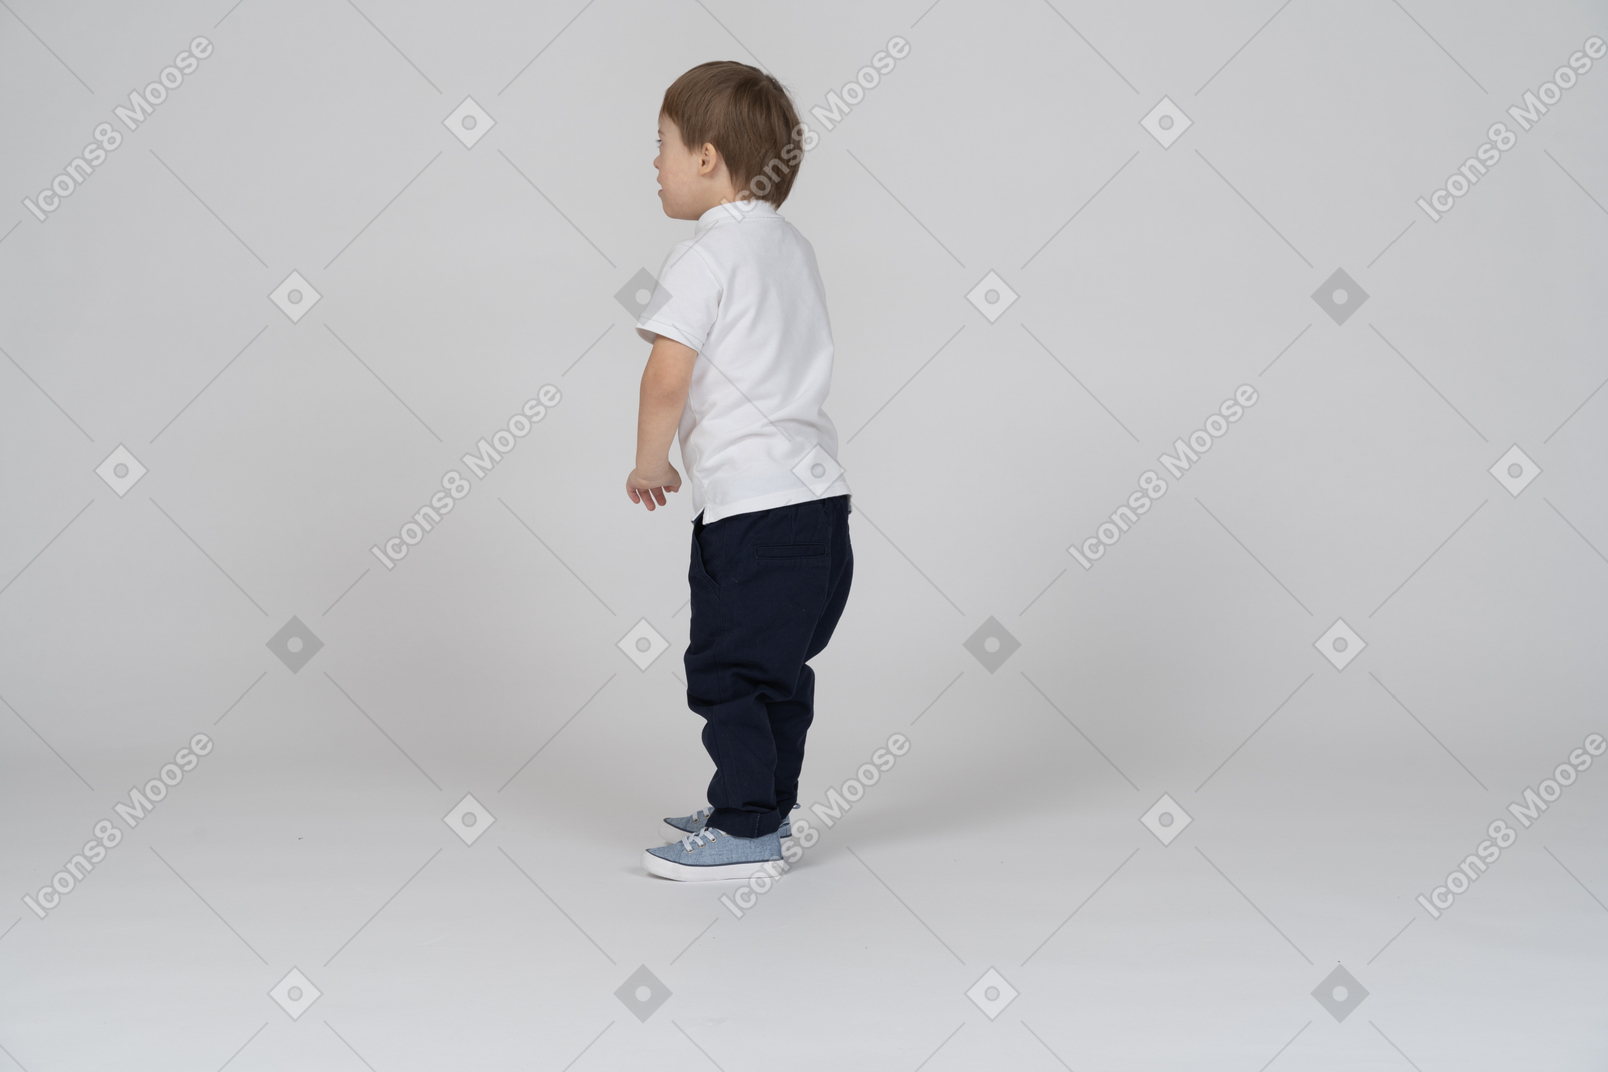 Вид сзади на маленького мальчика, стоящего с руками в стороны